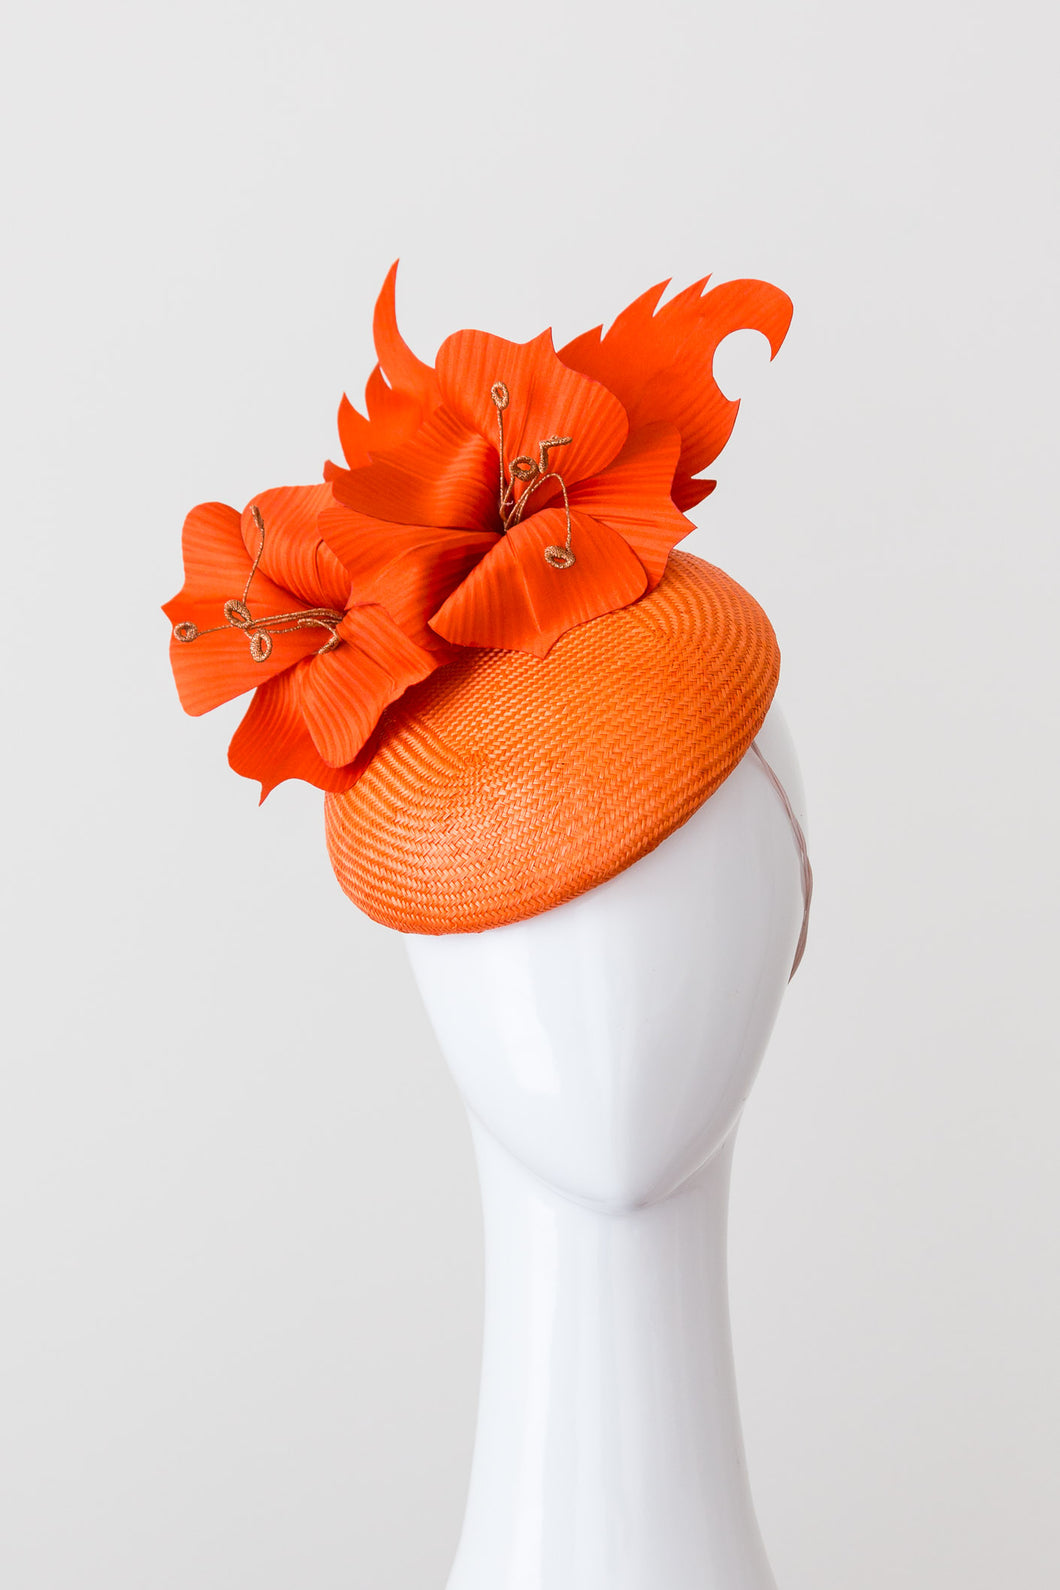 JANE: Orange Button hat with Silk Flowers